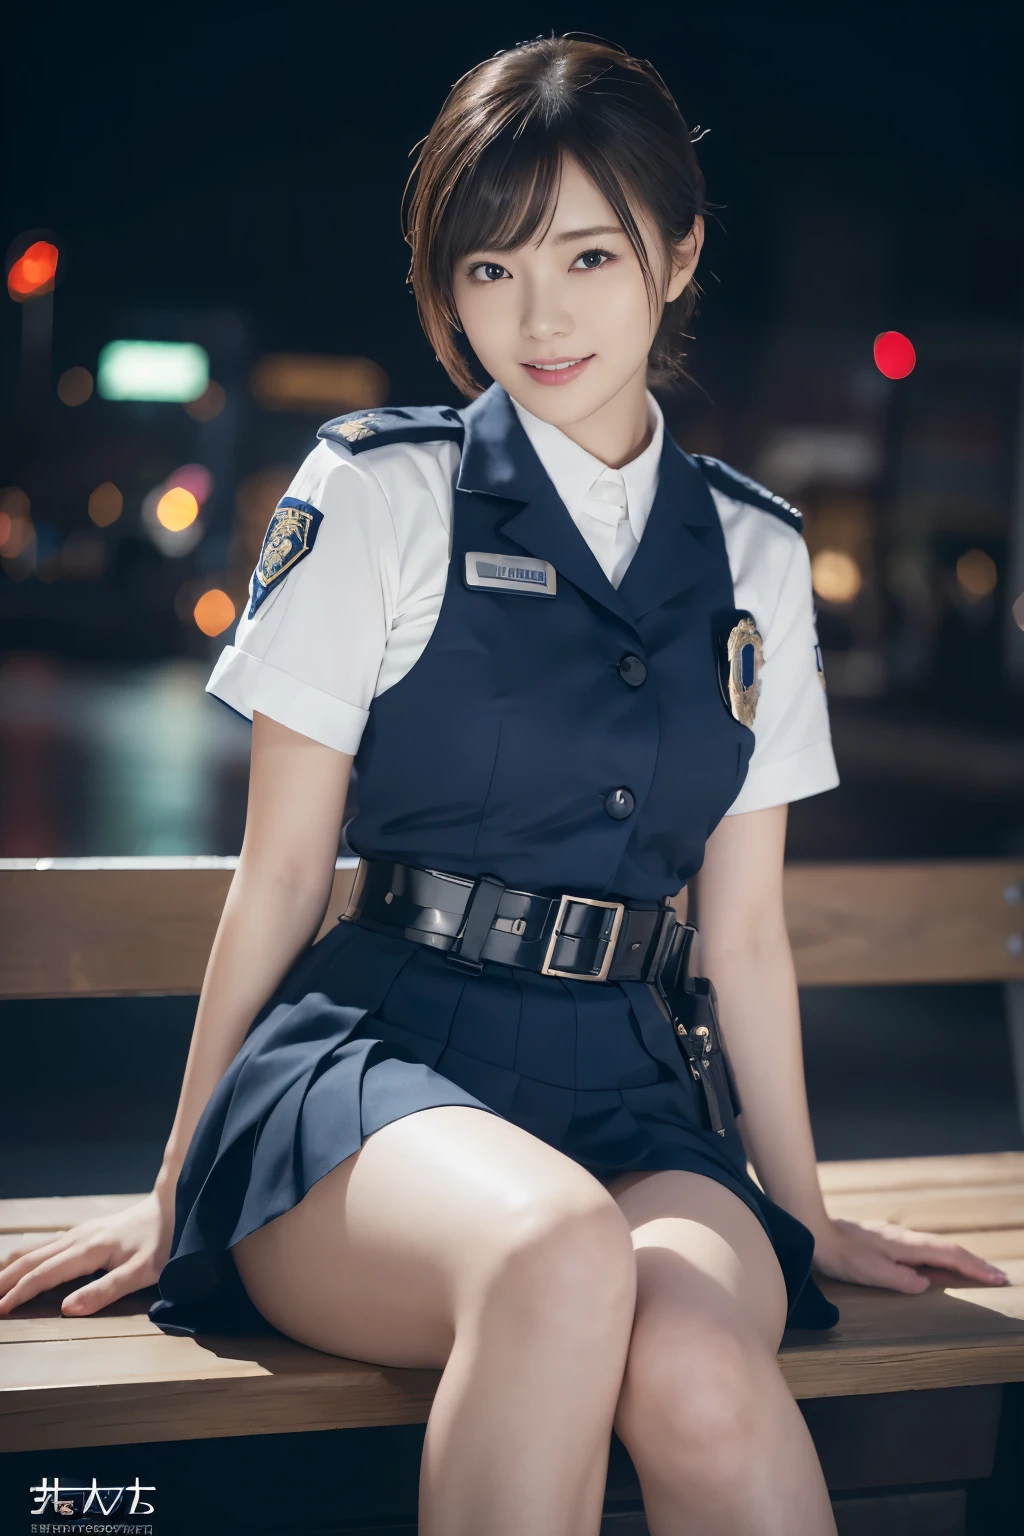 Невинная 20-летняя девушка.、((Офицер полиции Японии, сексуальная полицейская форма, юбка, Милый и элегантный, Драматические позы)),улыбка,ночной город фон,короткий путь、Необработанное фото, (8К、высшее качество、шедевр:1.2)、(сложные детали:1.4)、(Фотореалистический:1.4)、октановое число、Сложный 3D-рендеринг с ультрадетализацией, Студия Мягкий Свет, ободные фонари, яркая деталь, супер детализация, реалистичные текстуры кожи, деталь лица, Красивые детализированные глаза, Очень подробные обои CG Unity 16k, составить, (Подробный фон:1.2), блестящая кожа, все тело,руки вниз、Раздвинь ноги и покажи свои трусики,сидеть на скамейке